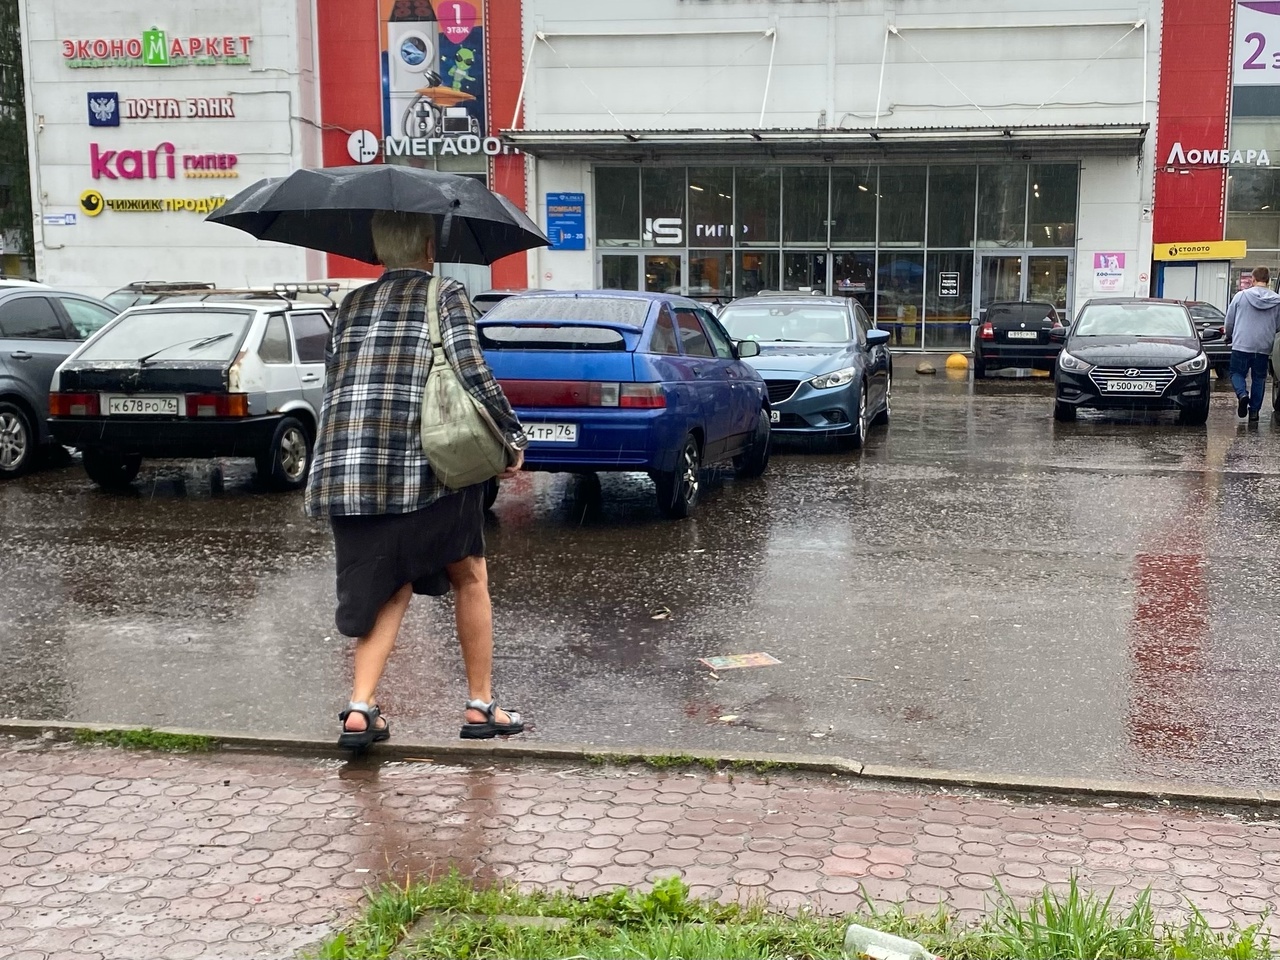 Дожди и потепление: погода в Ярославле до конца рабочей недели